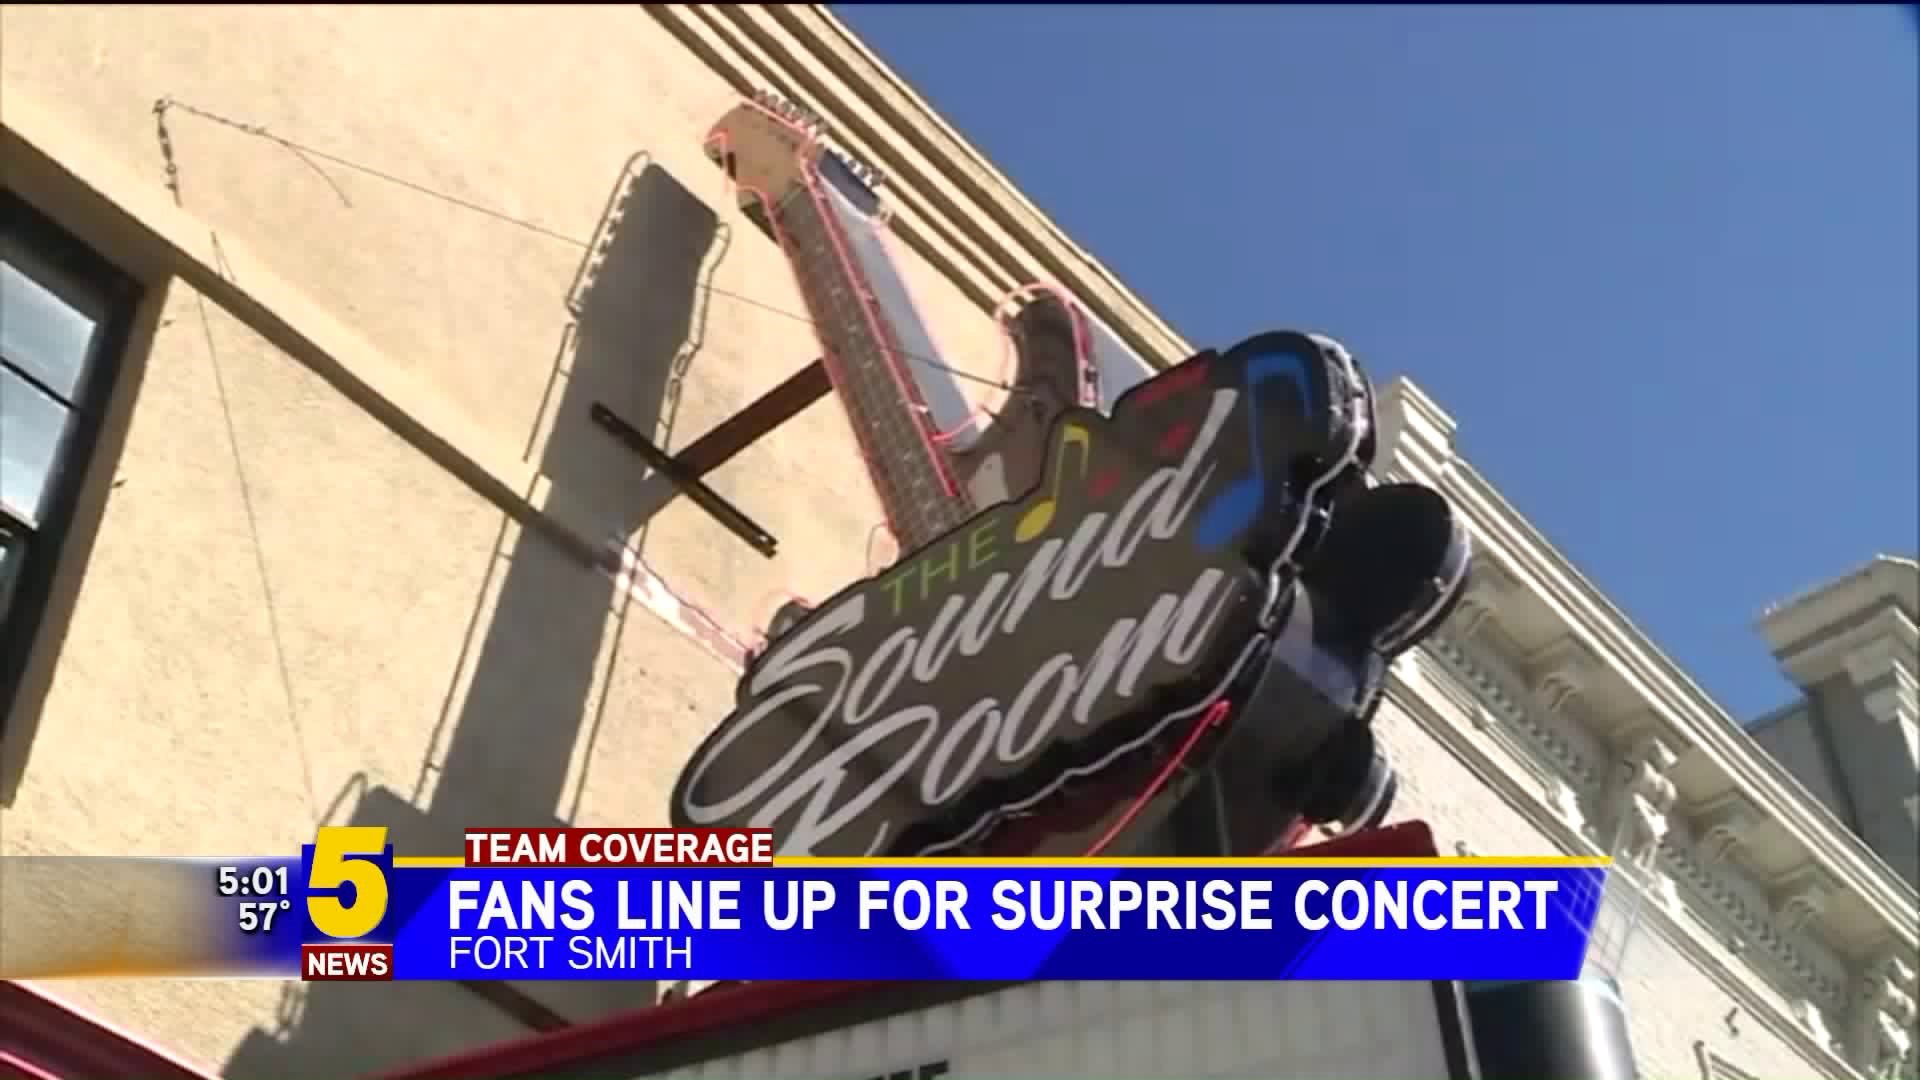 Fans Line Up For Surprise Concert